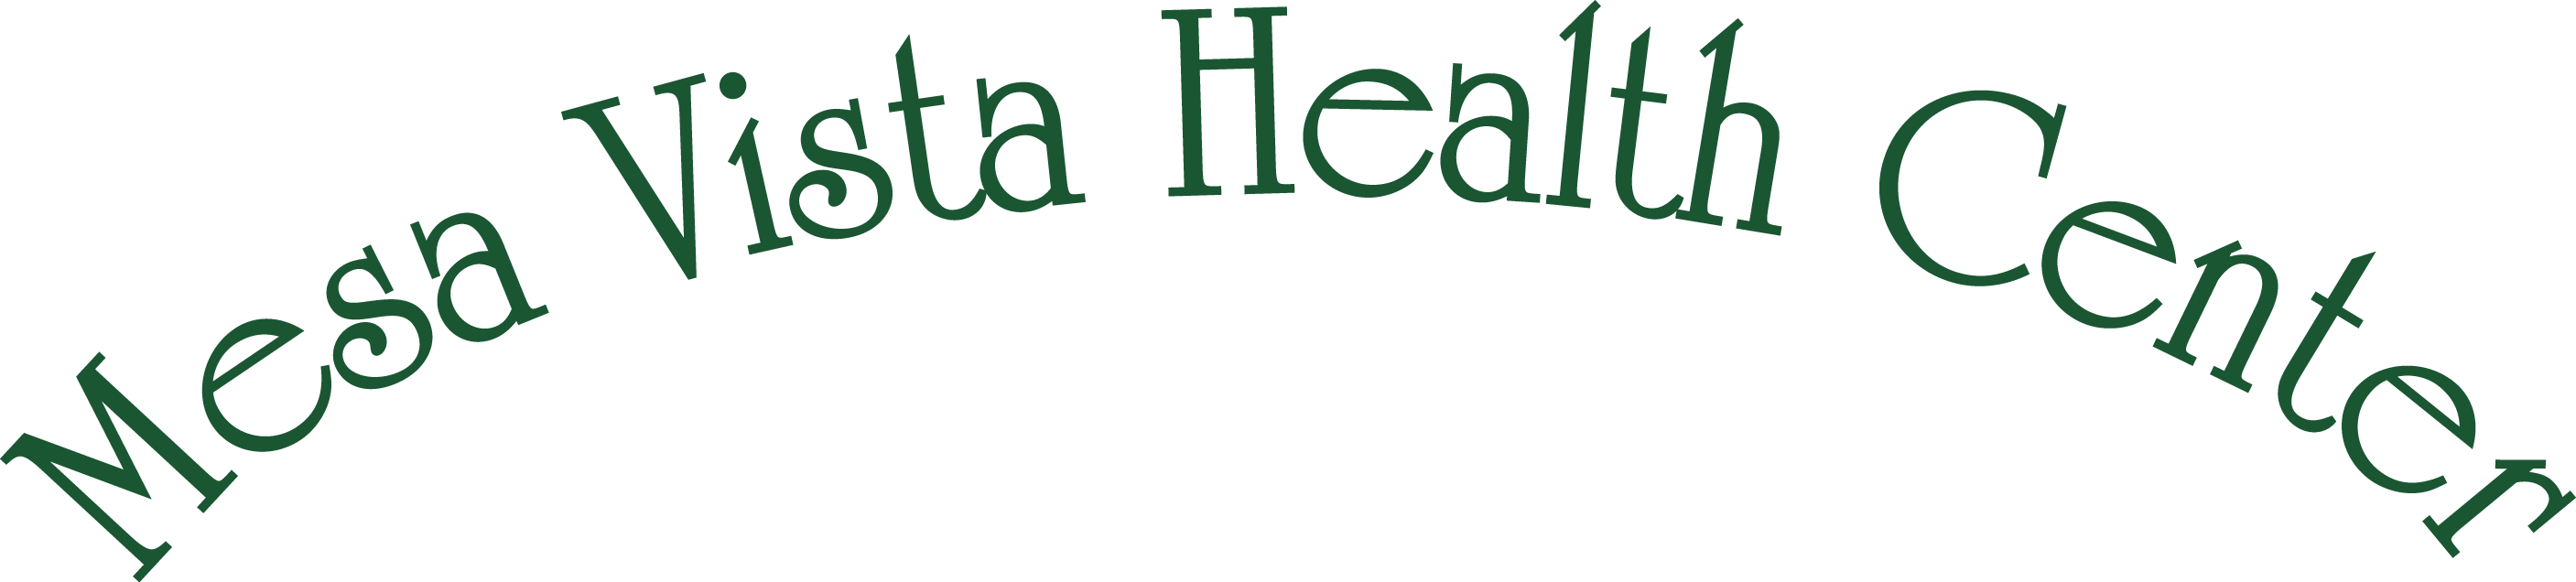 Mesa Vista Heath Center Logo